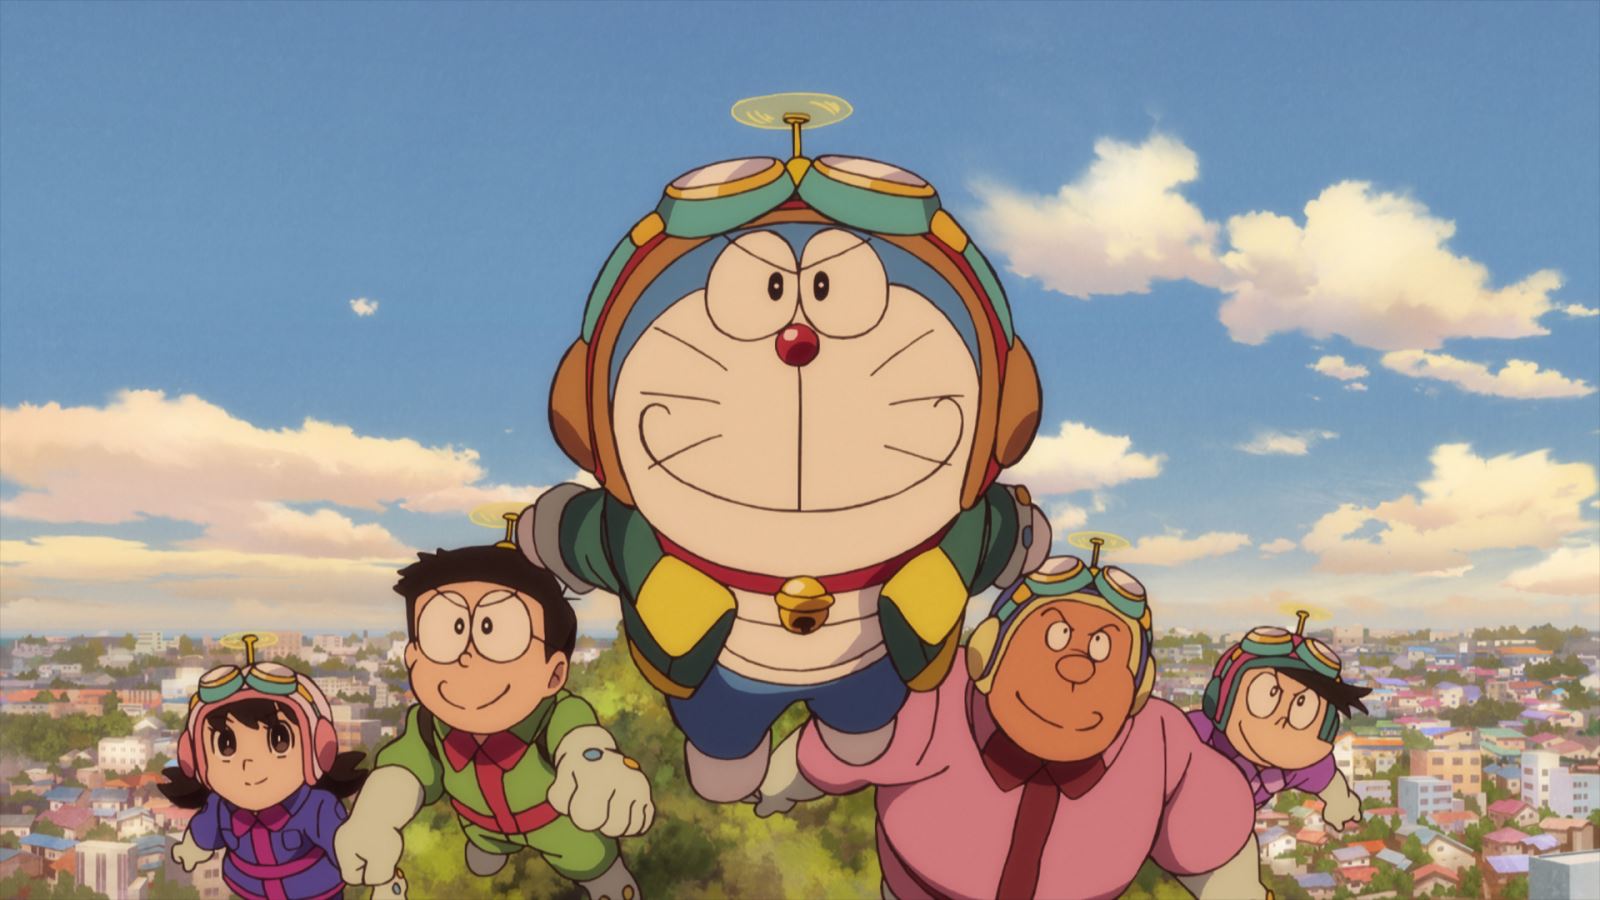 Phim "Doraemon: Nobita và vùng đất lý tưởng trên bầu trời" - tạo cơn sốt ở Nhật, sắp ra mắt khán giả Việt Nam